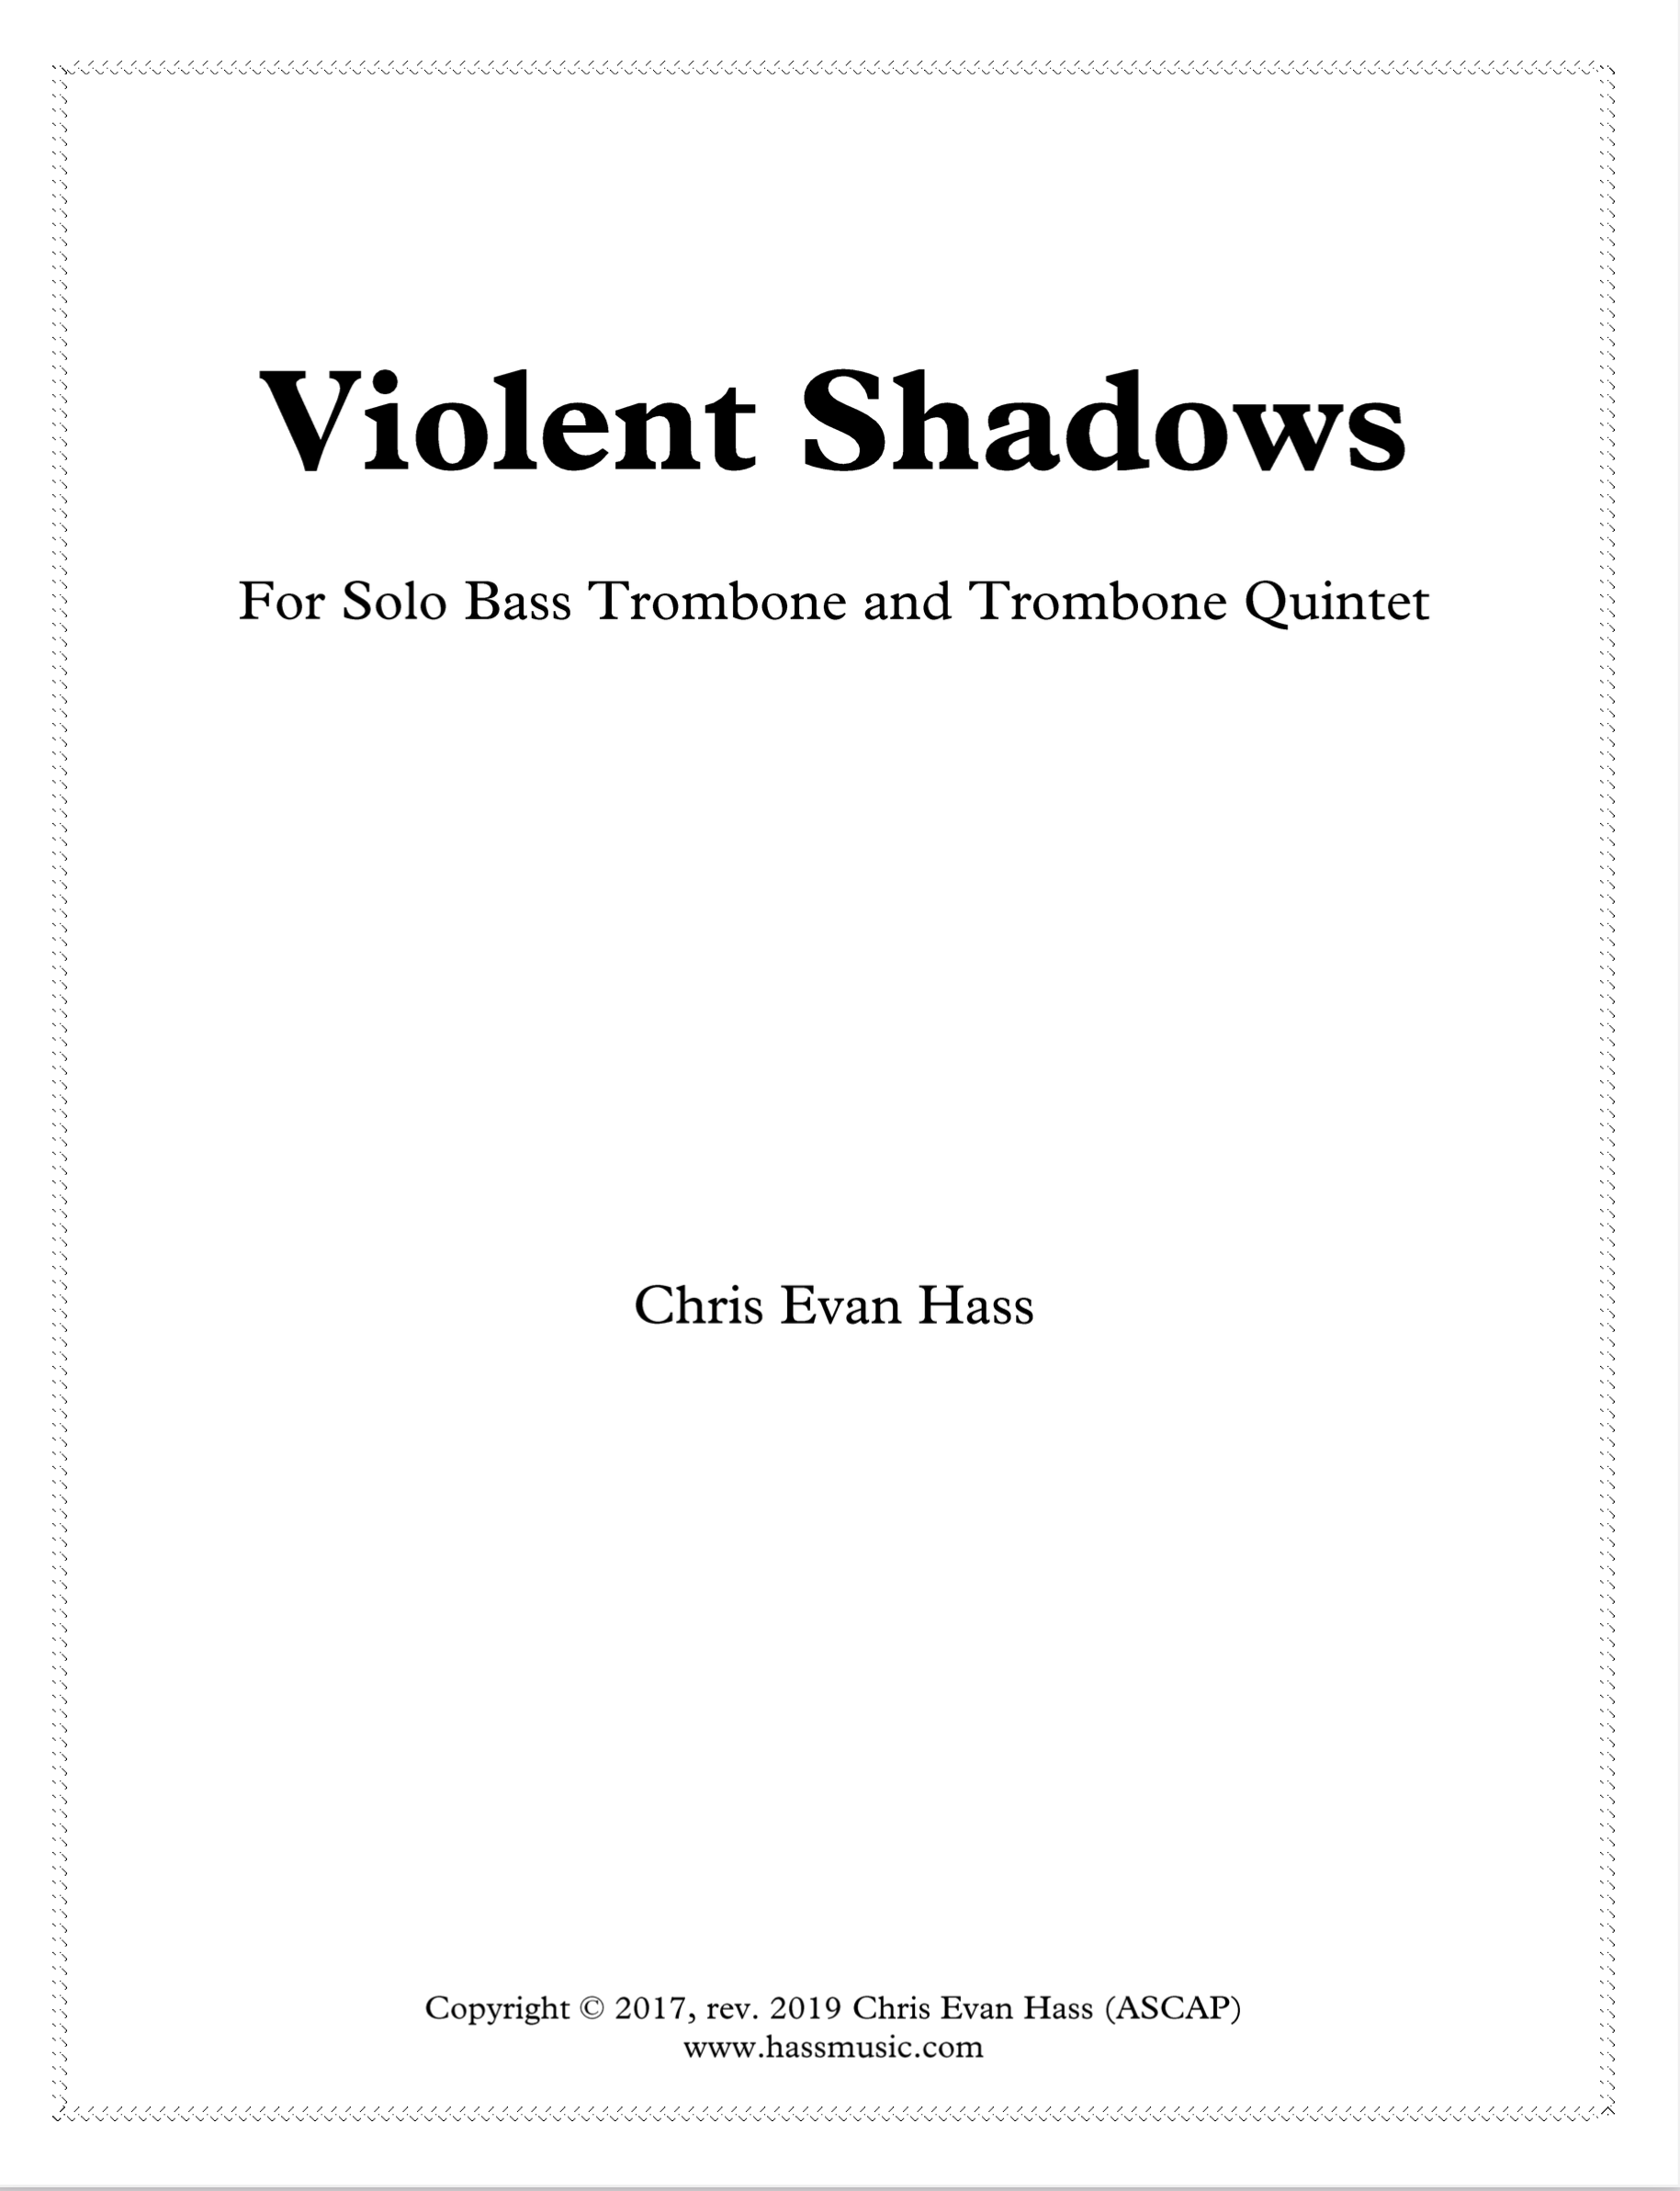 Violent Shadows (Quintet Version) by Chris Evan Hass